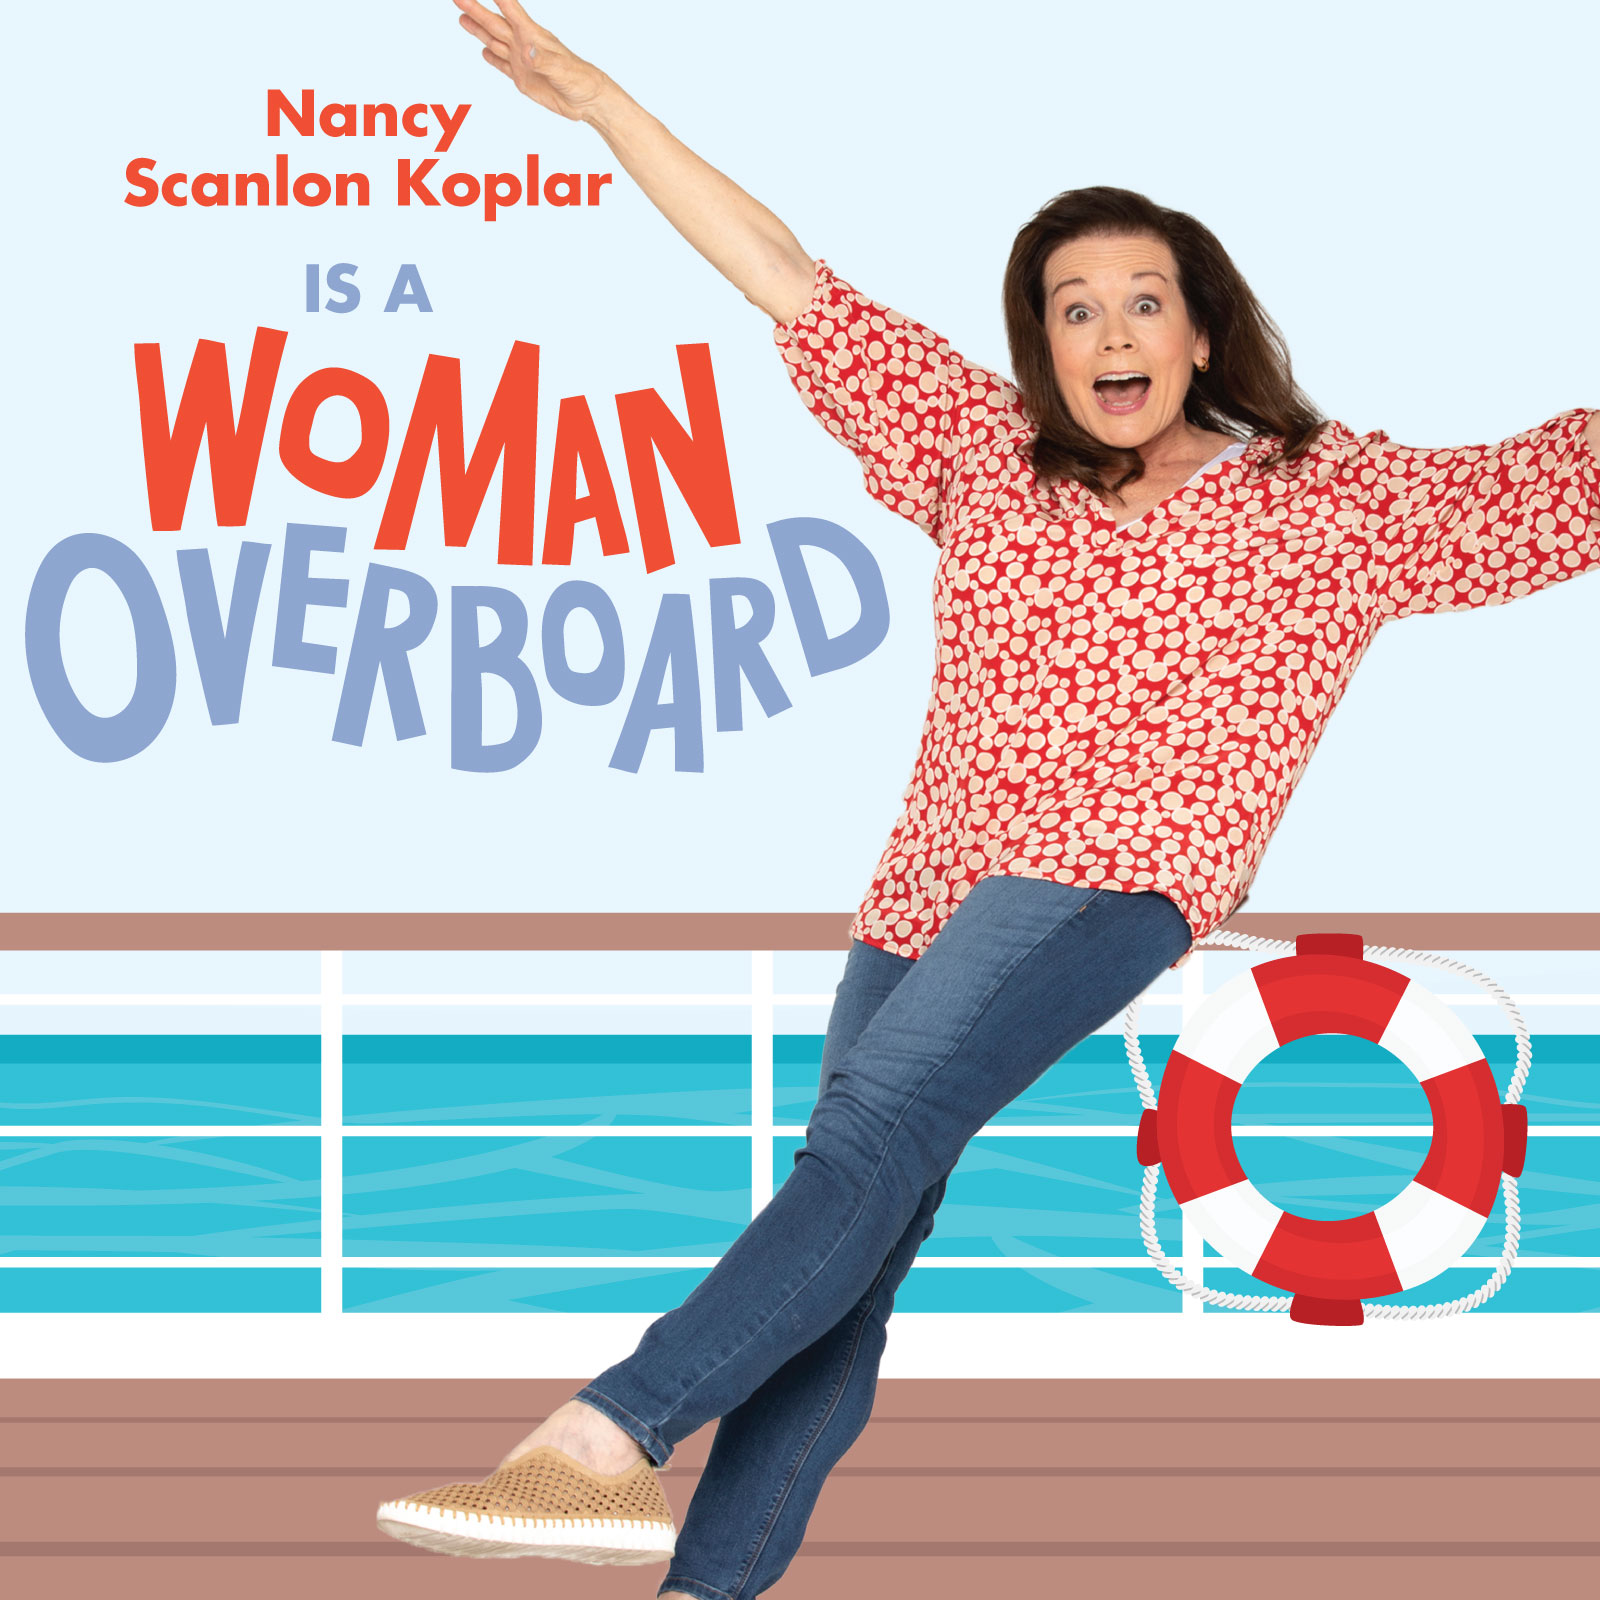 nancy scanlon Koplar is Woman Overboard